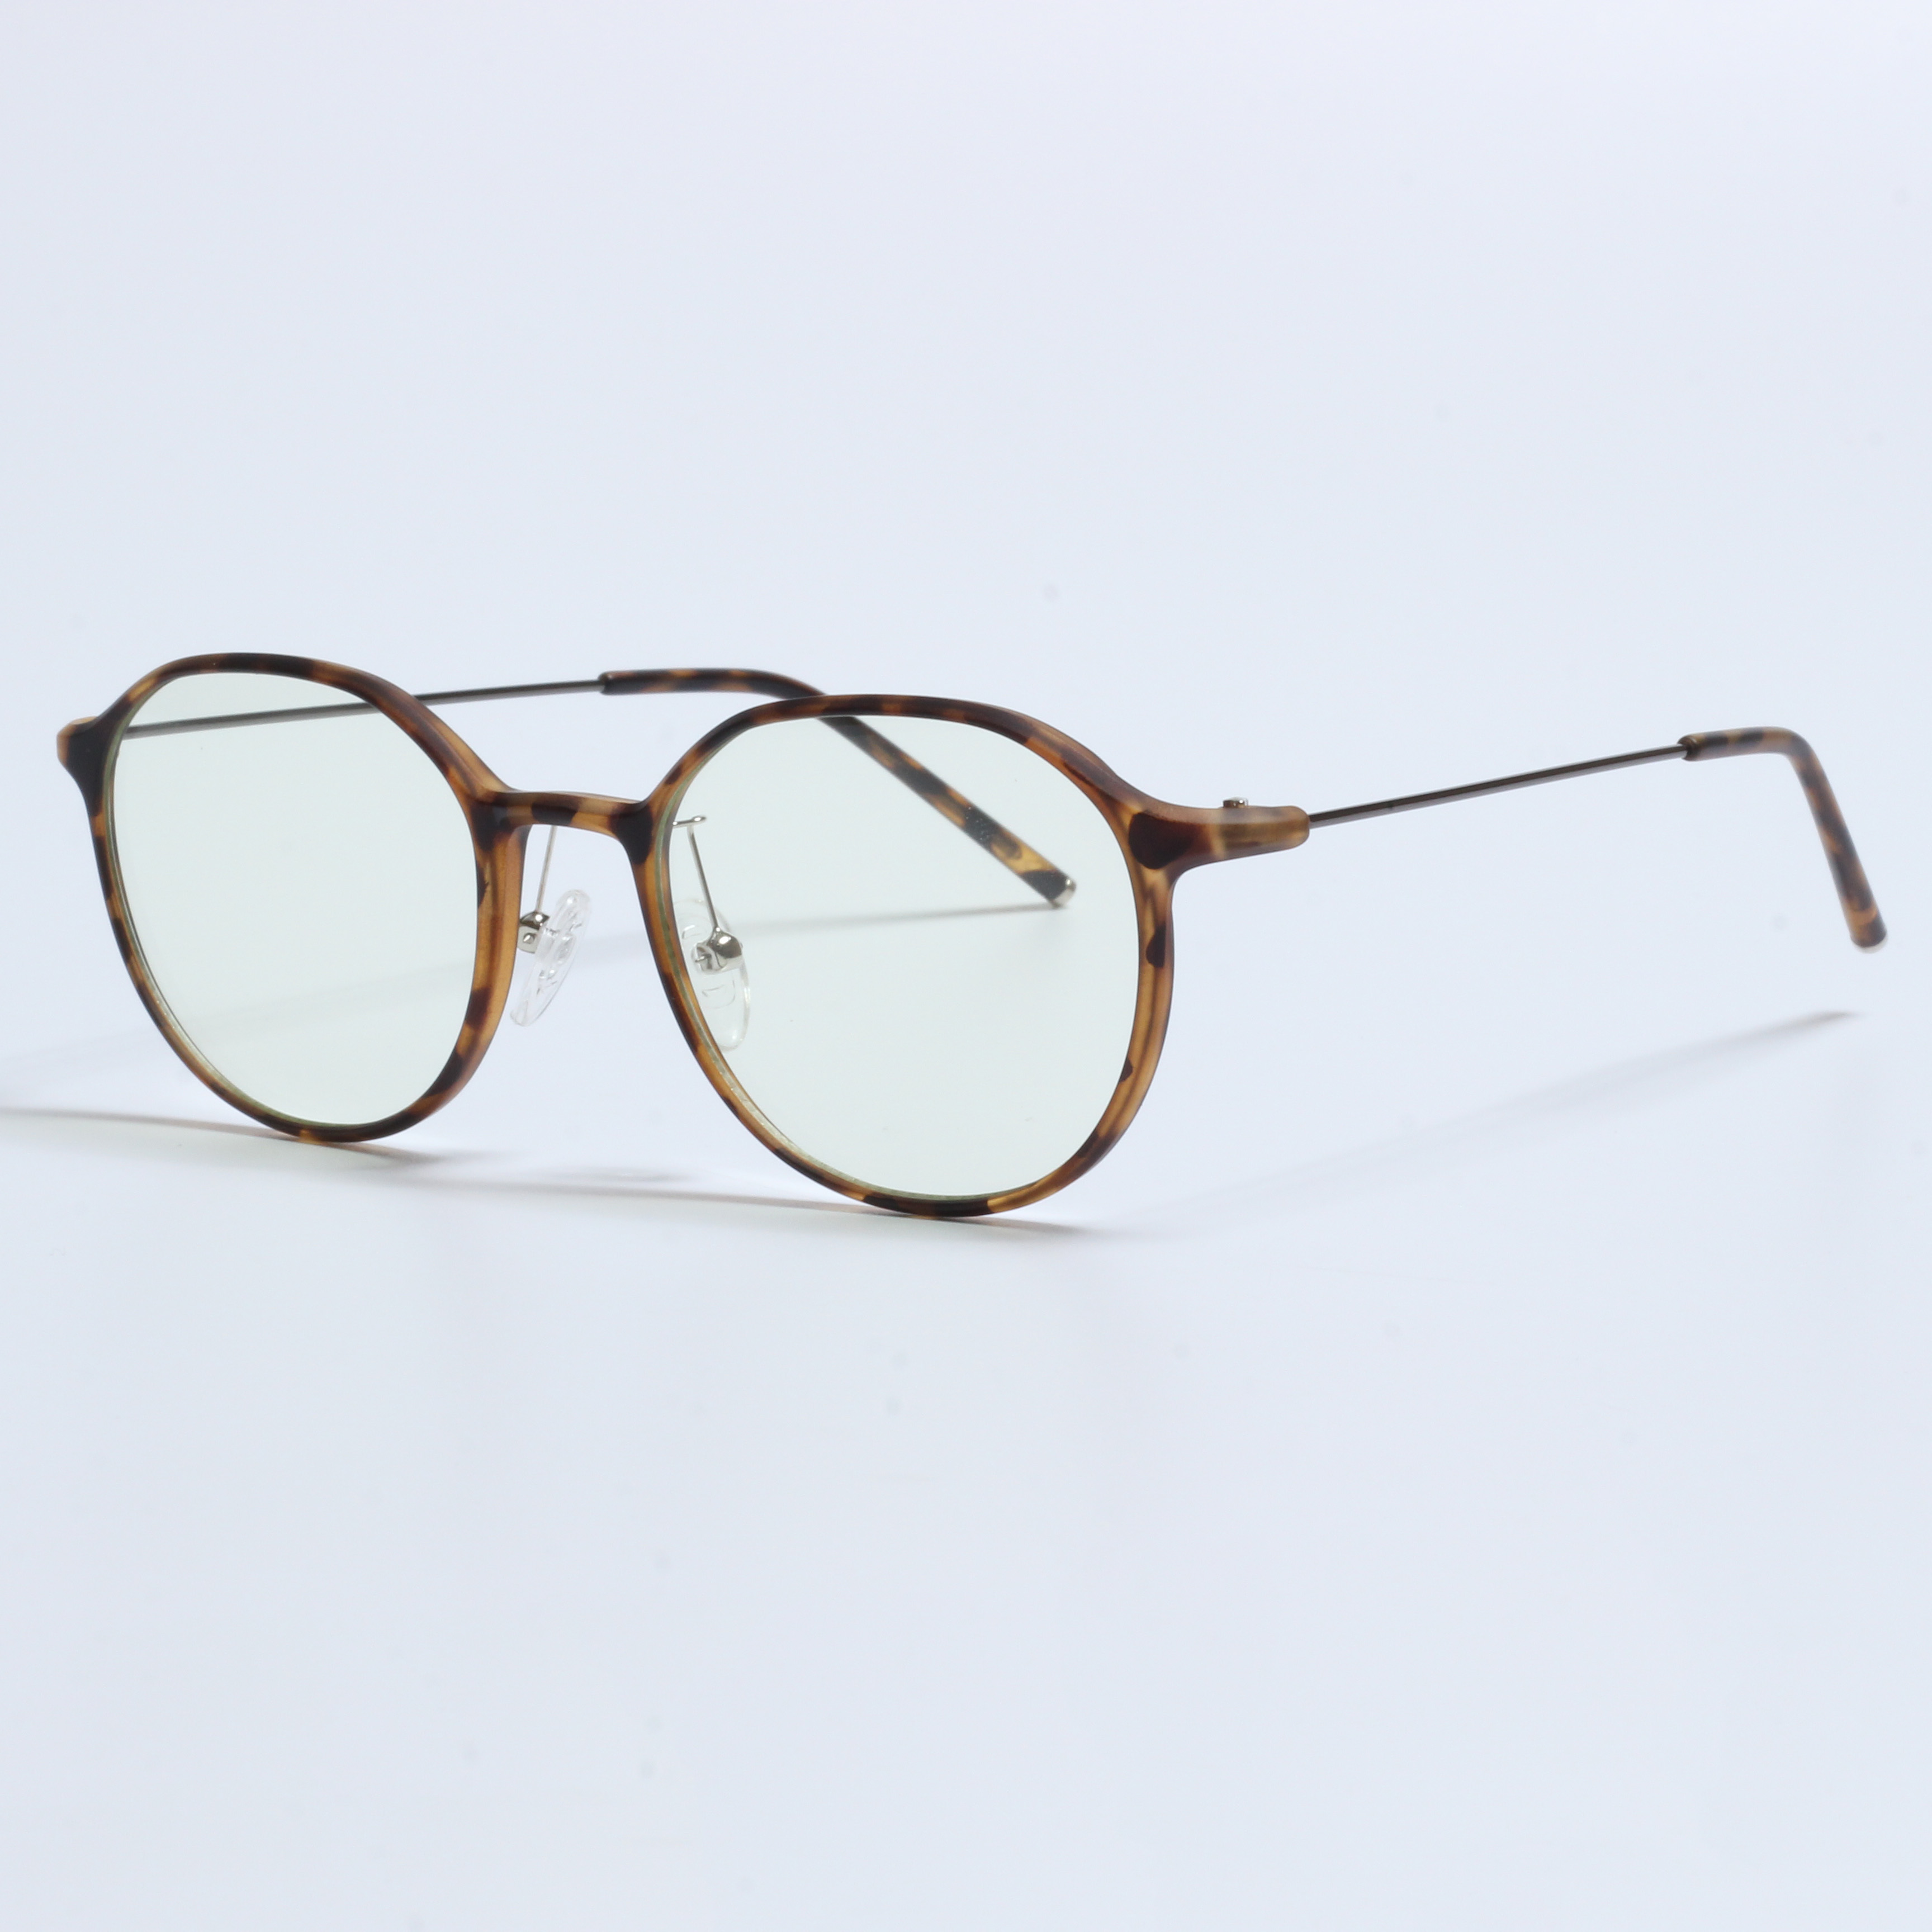 Vintage Thick Gafas Opticas De Hombres Transparent TR90 Frames (6)